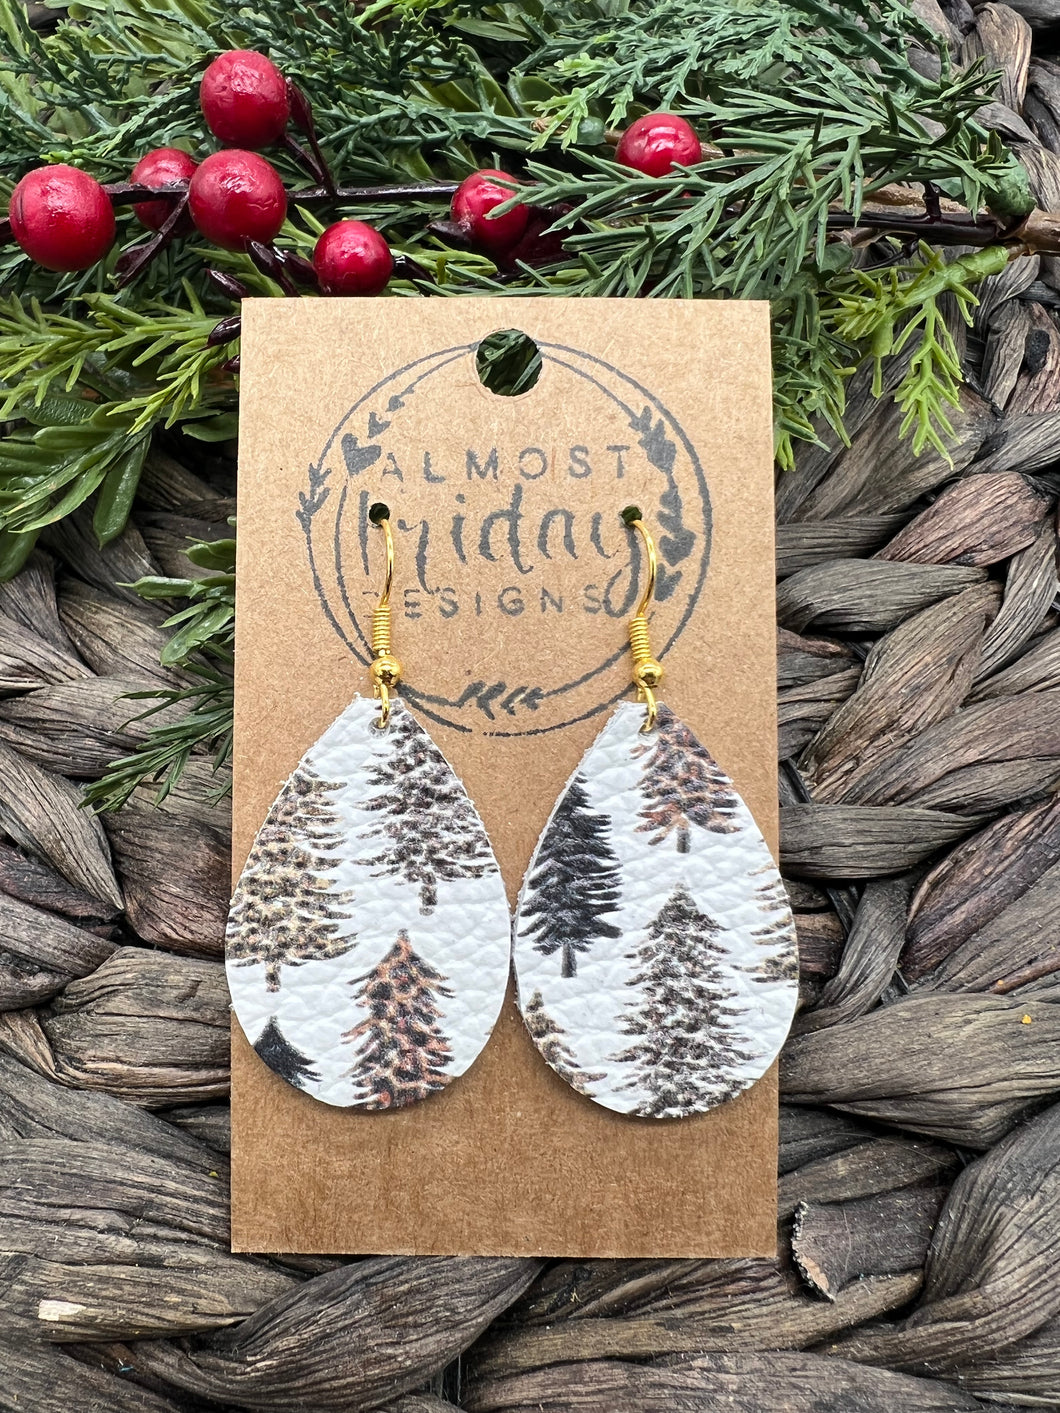 Genuine Leather Earrings - Teardrop - Christmas Tree - Christmas Tree Earrings - Leopard Print - Leopard Earrings - Statement Earrings - Animal Print